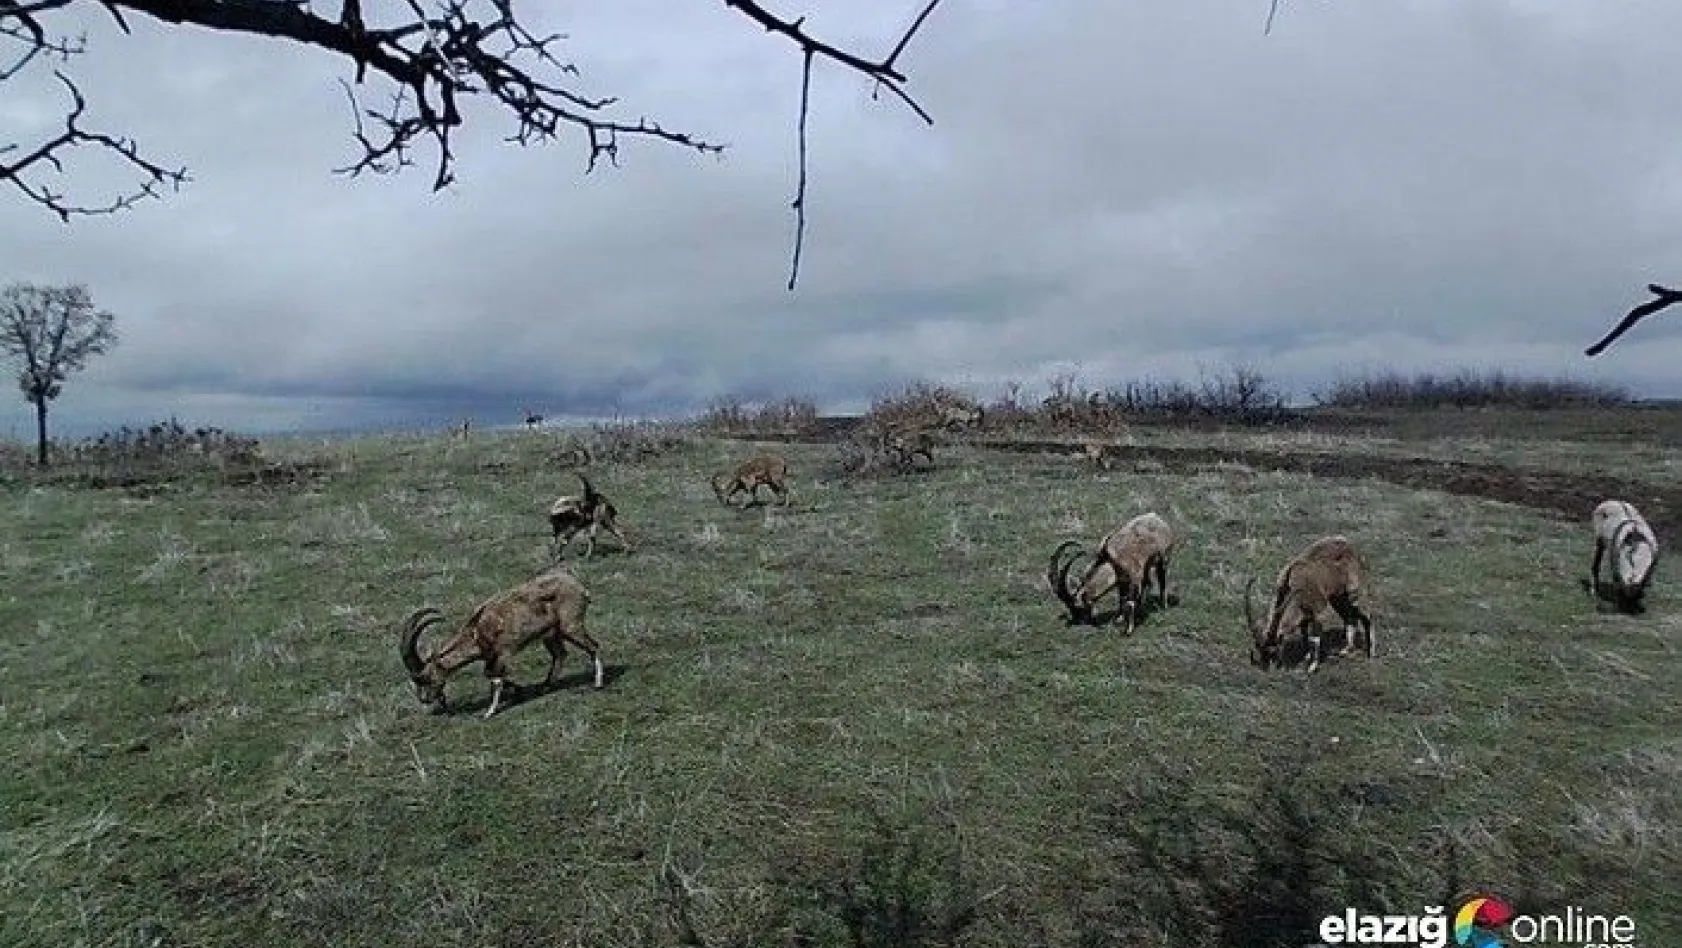 Yaban keçileri, doğal yaşam alanlarında foto kapanla görüntülendi